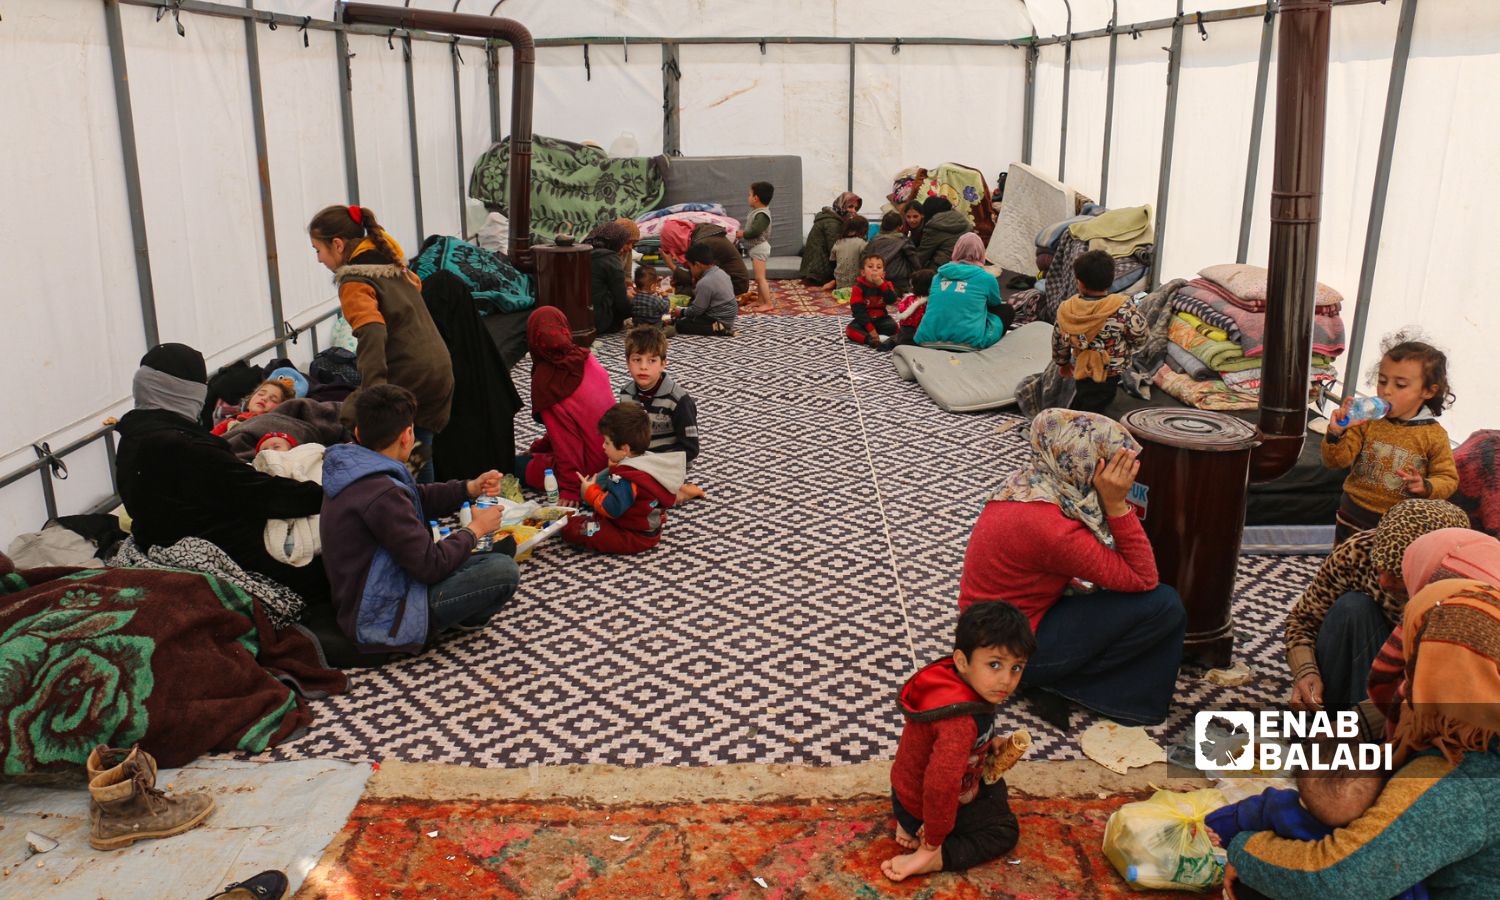 عائلات تقطن داخل خيمة كمركز إيواء في بلدة جنديرس بريف حلب الشمالي متضررة من الزلزال الذي ضرب جنوبي تركيا ومناطق متفرقة في سوريا- 13 شباط 2023 (عنب بلدي/ ديان جنباز)